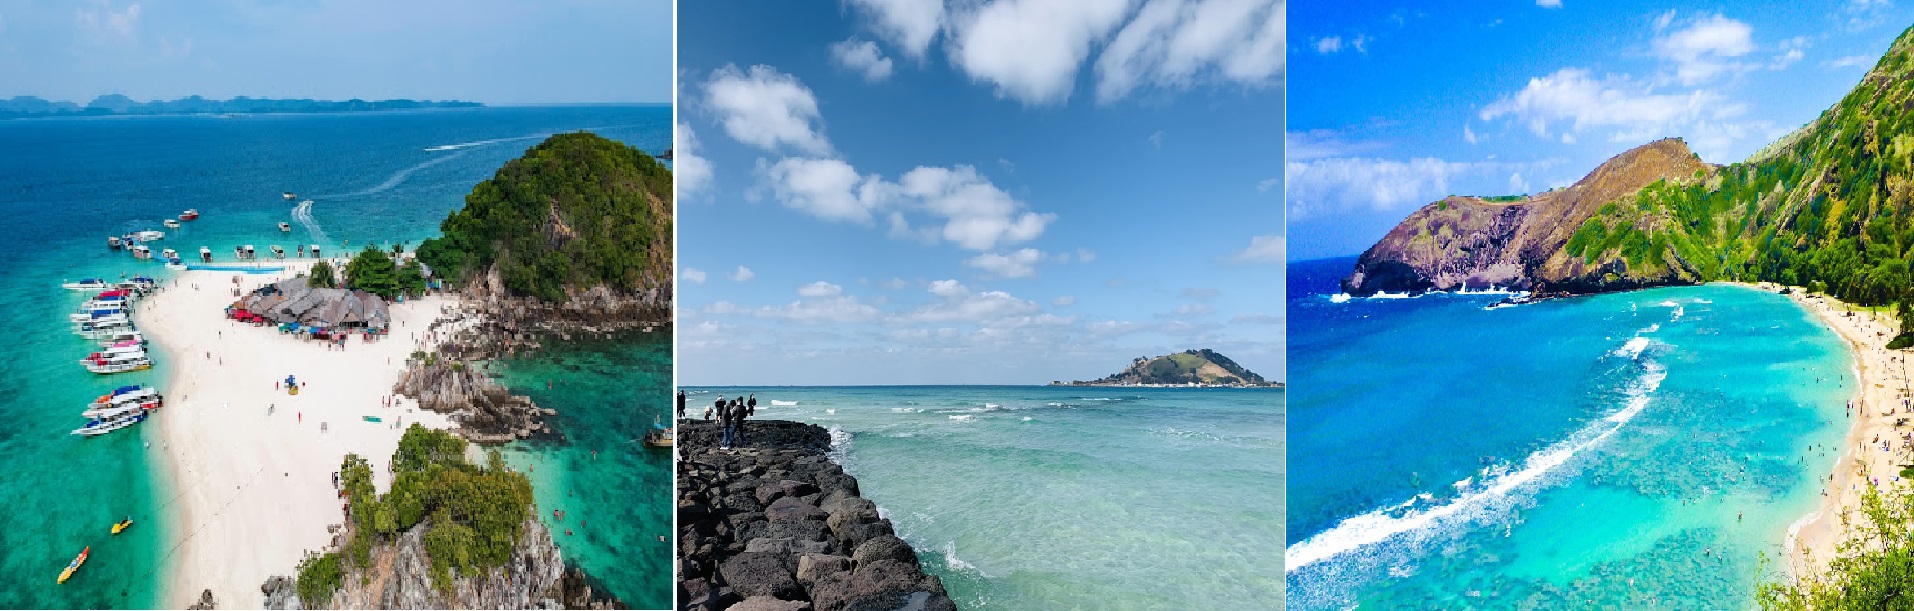 Thời tiết tuyệt vời tại bãi biển Phú Quốc - địa điểm hàng đầu của du lịch nghỉ dưỡng Wellness